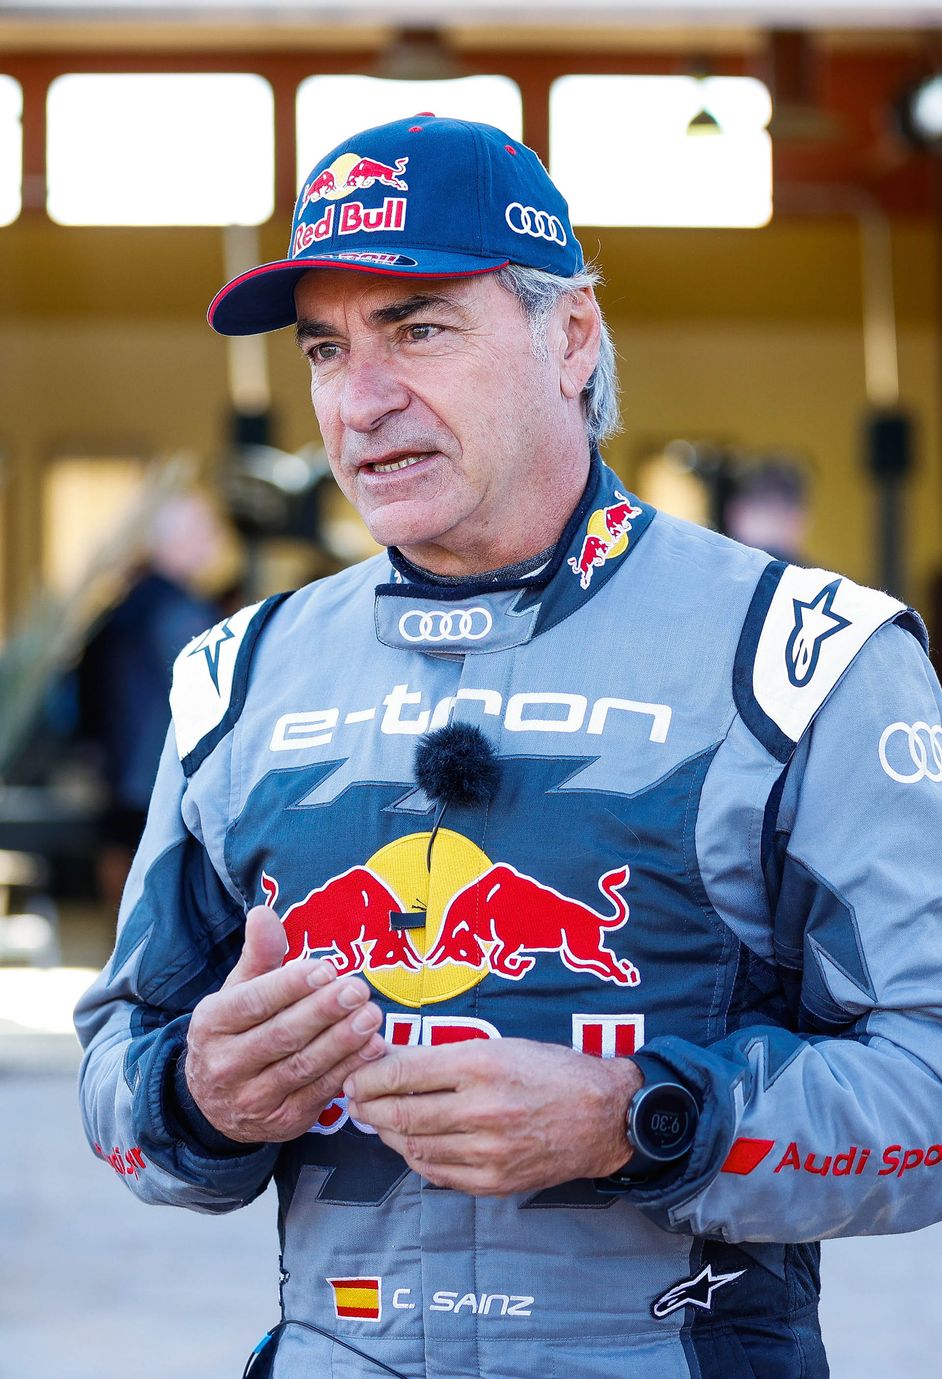 Portrait de Carlos Sainz, pilote ambassadeur Audi et légende du rallye